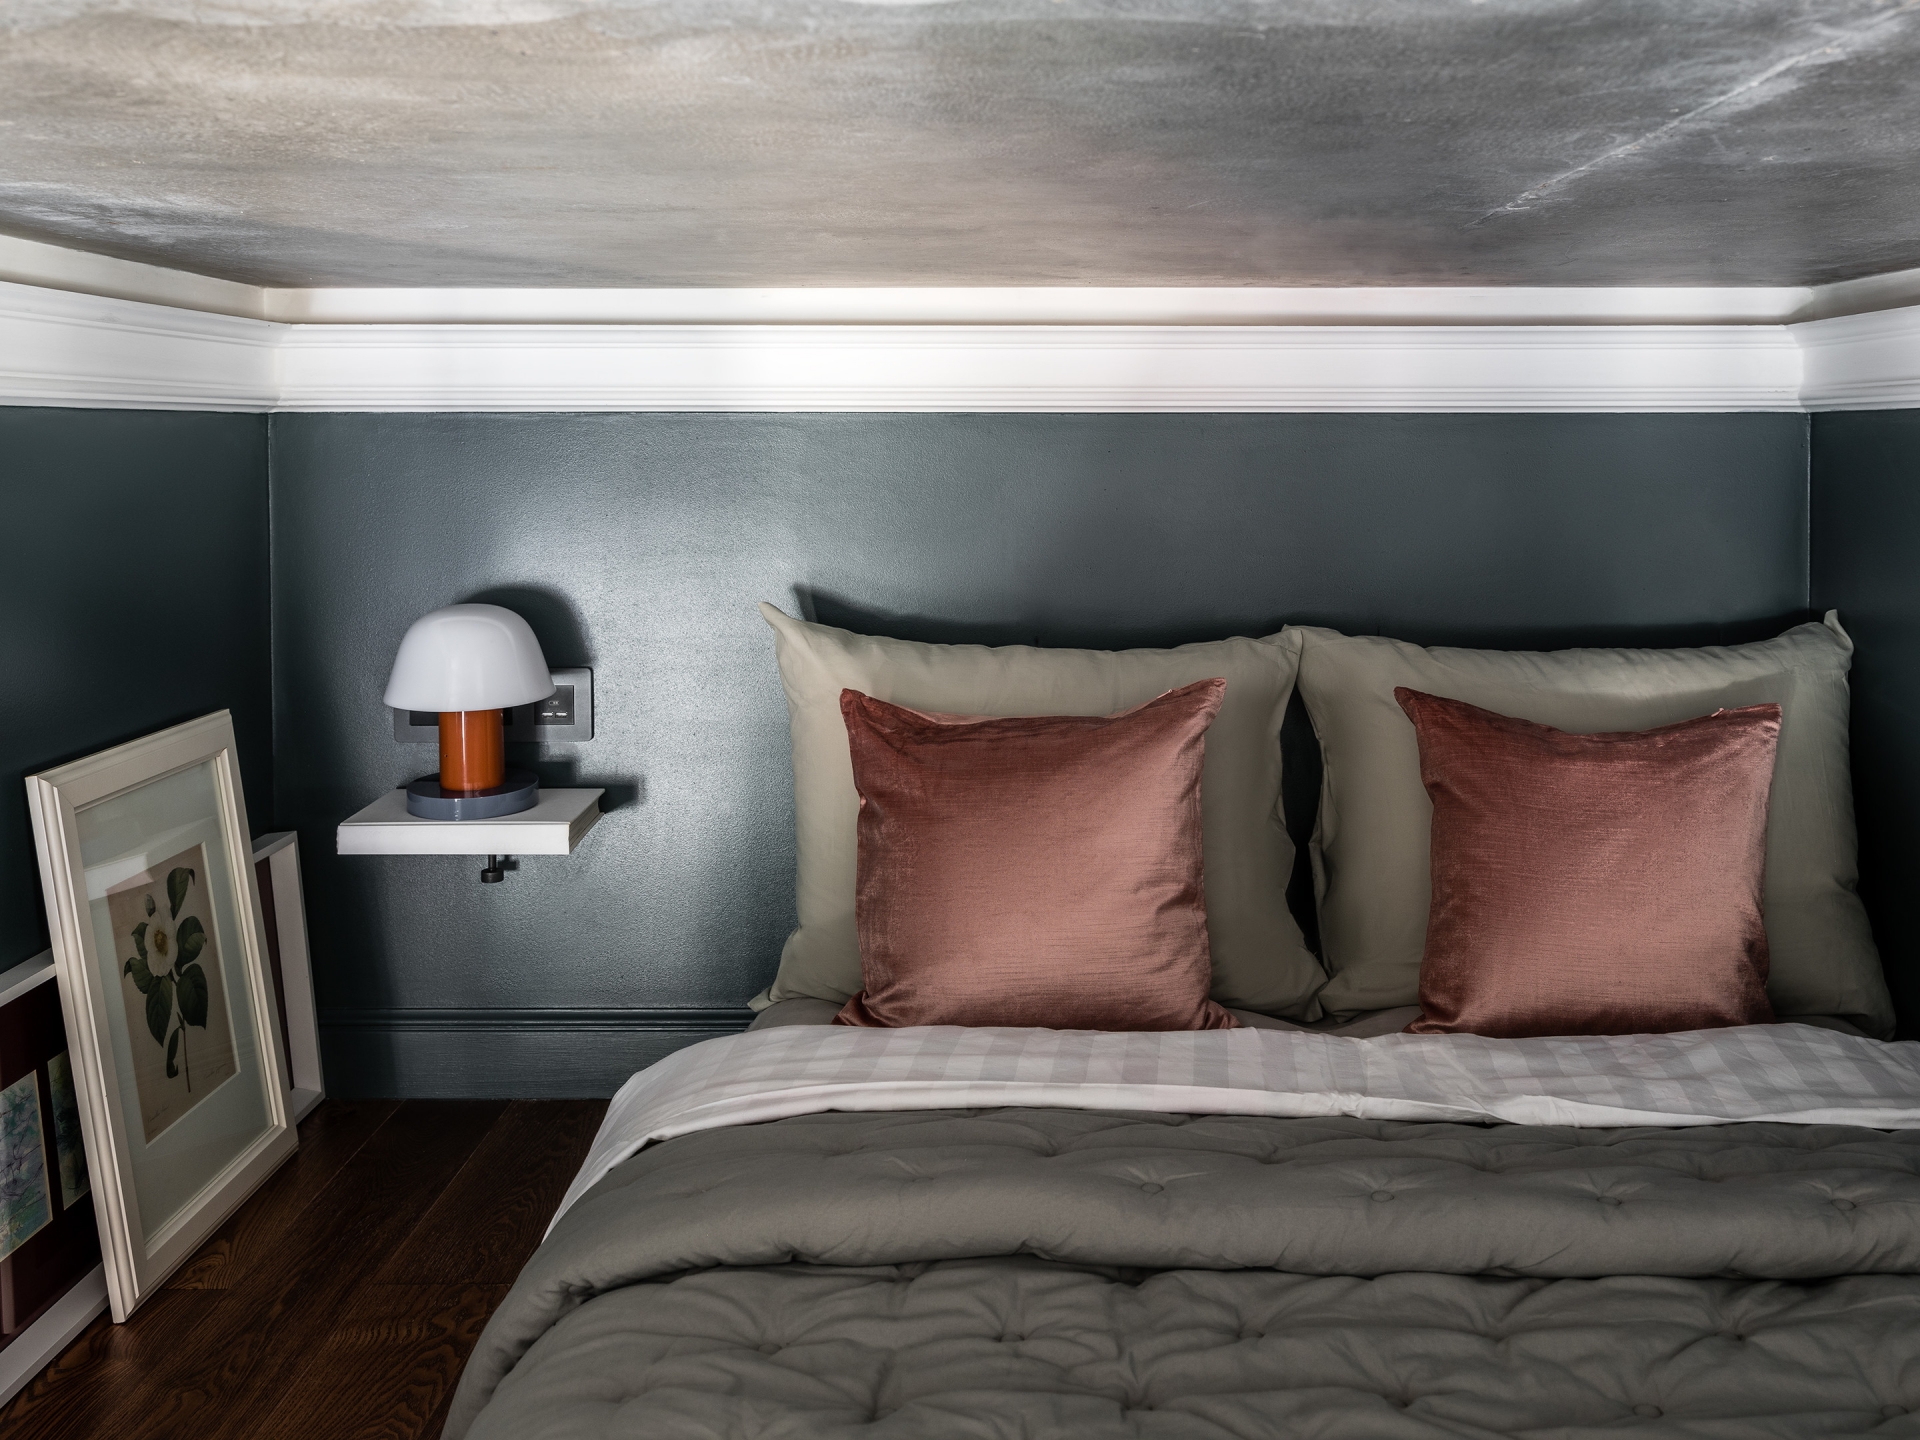 Phòng ngủ đơn giản với sàn gỗ tối màu, tường sơn xám, gối màu hồng đỗ nổi bật. Táp đầu giường nhỏ, gắn trên tường để tiết kiệm diện tích sàn, vài bức tranh hoa lá trang trí cho phòng ngủ thêm xinh.